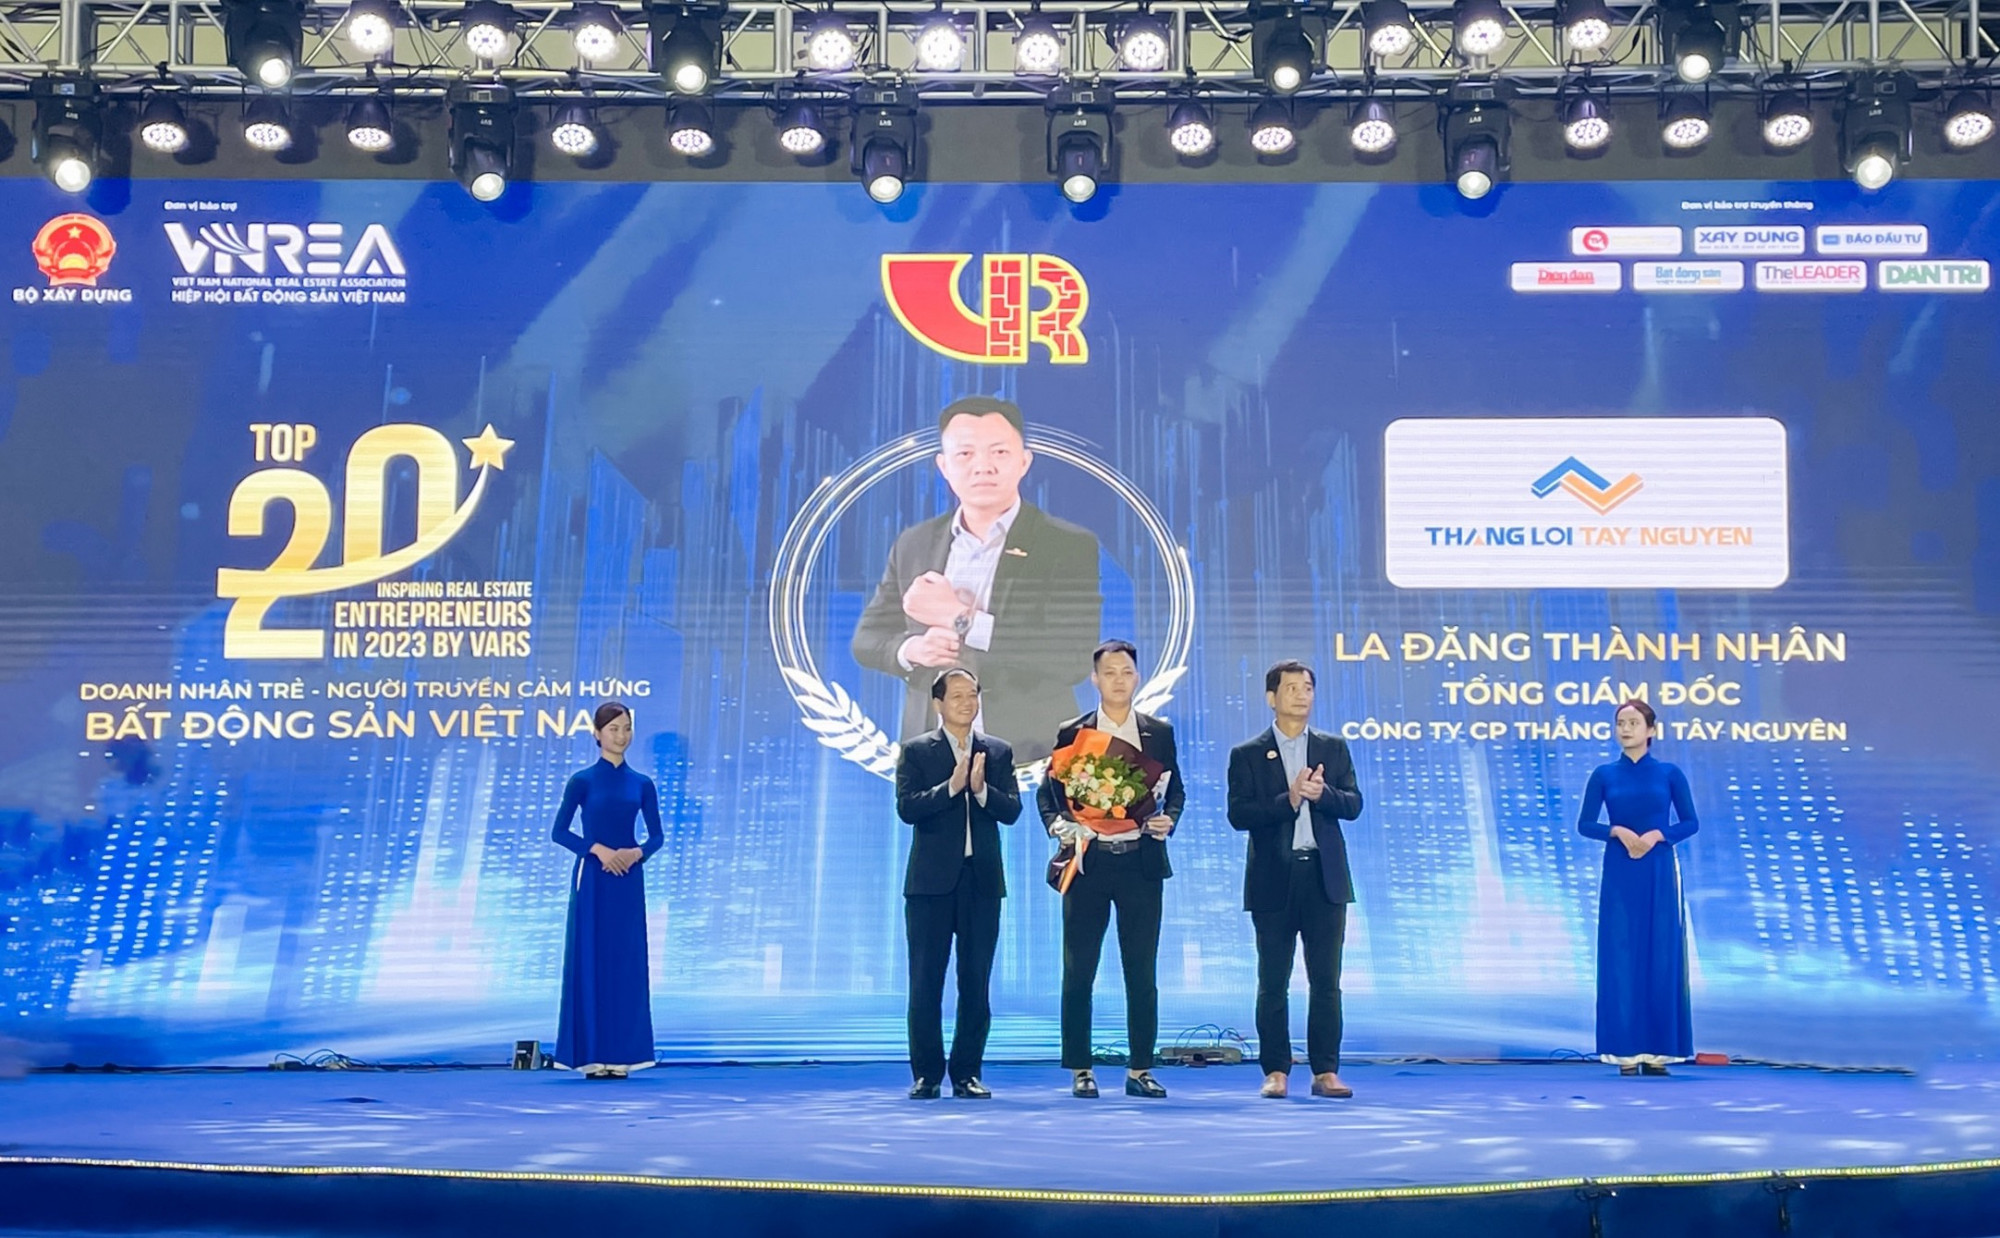 Anh La Đặng Thành Nhân - Tổng giám đốc Thắng Lợi Tây Nguyên (giữa) nhận giải thưởng “Top 20 doanh nhân trẻ truyền cảm hứng bất động sản Việt Nam năm 2023”